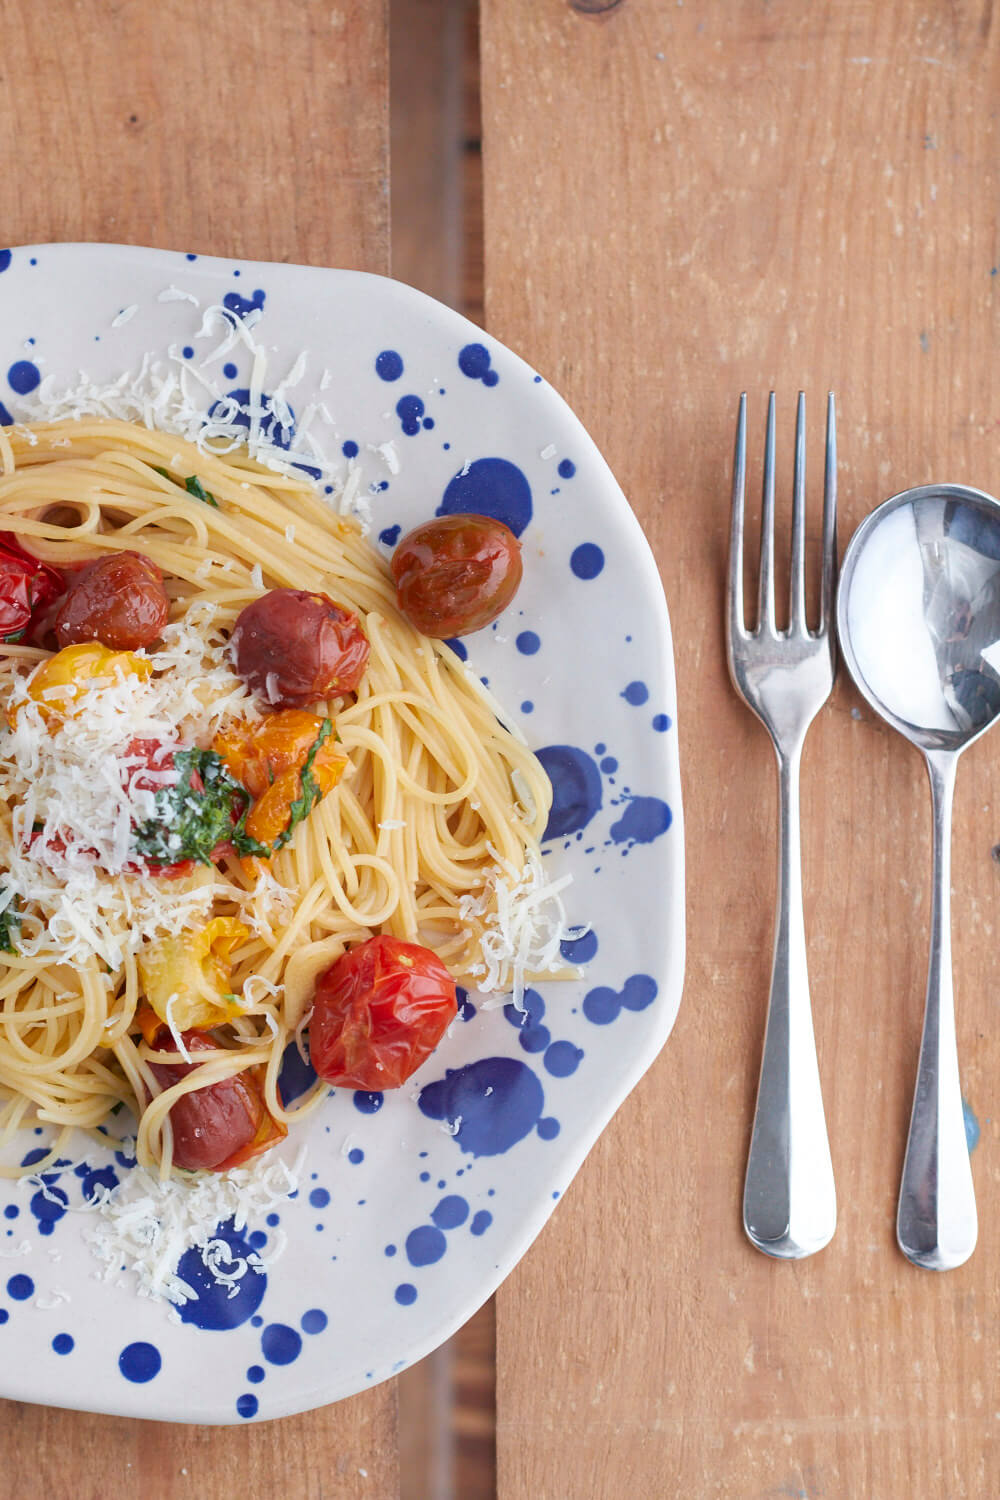 Alle Lieben Pasta und im Februar mit Tomaten! Bei Tastesheriff findet ihr ein leckeres Rezept für bunte Tomatenpasta mit Knoblauch und Basilikum.